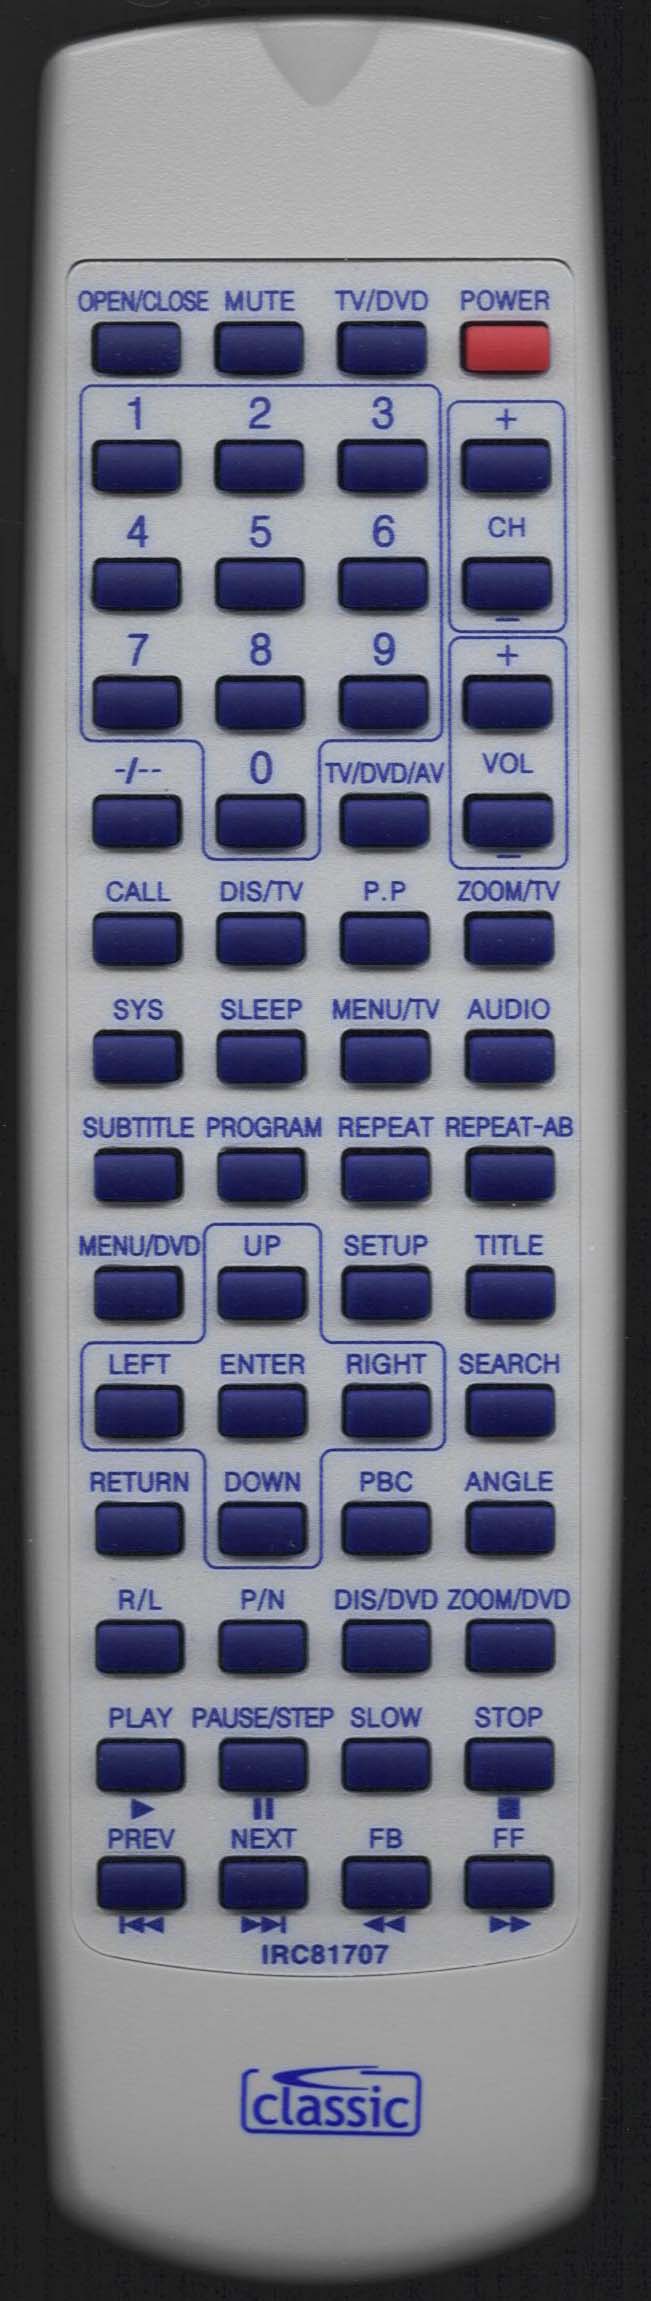 Cello DCS-1420 Remote Control